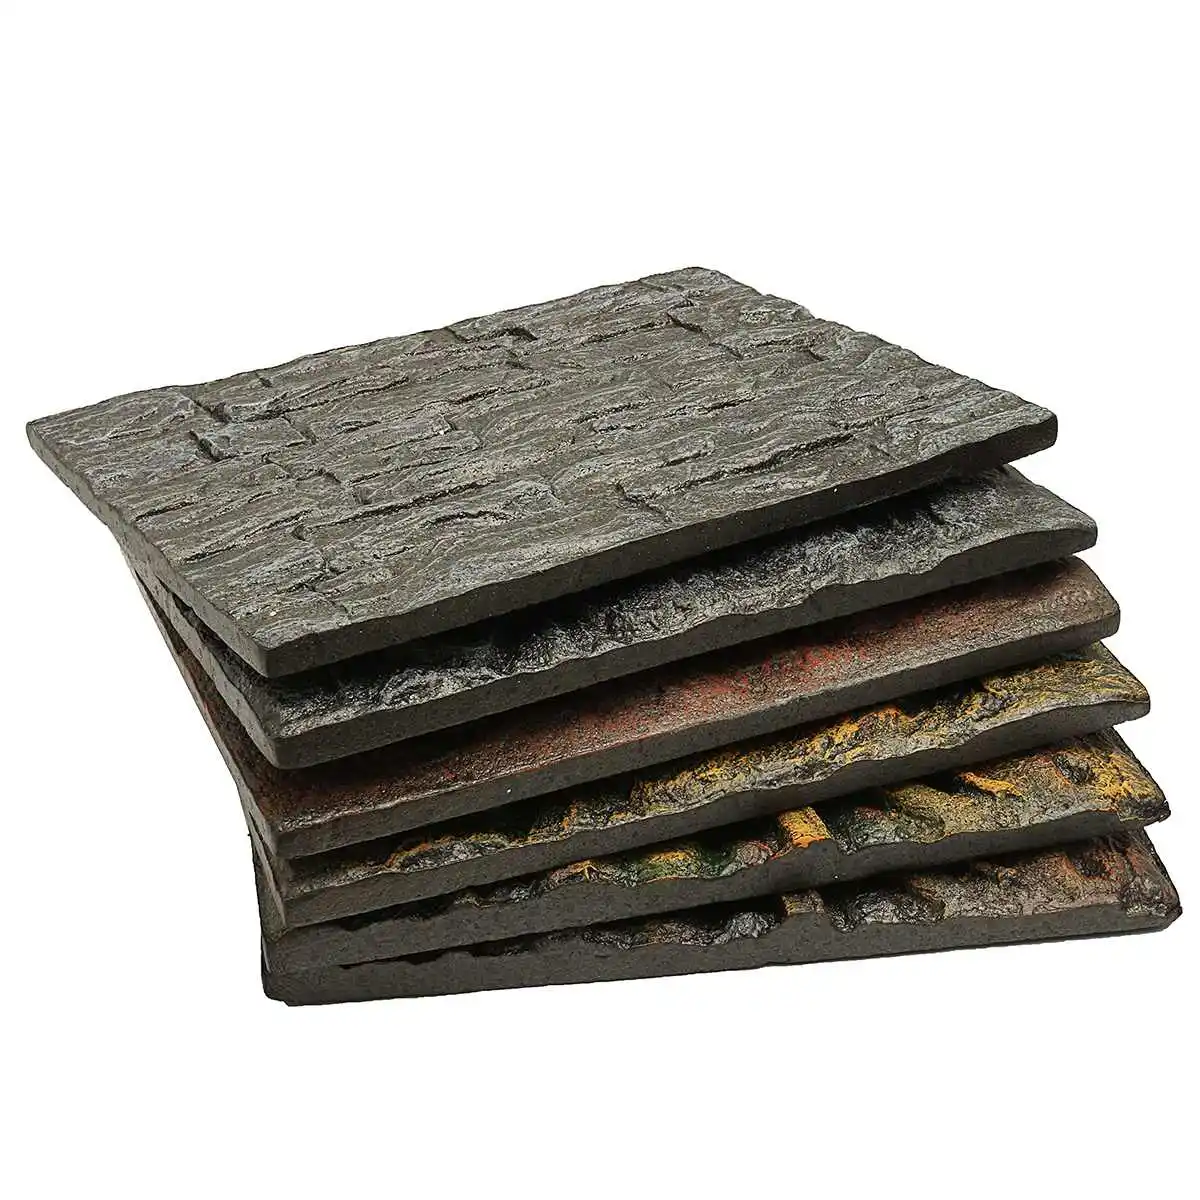 6 видов 3D пены рептилий камень аквариум фон аквариум доска Декор из искусственной кожи пена 60x45x3 см